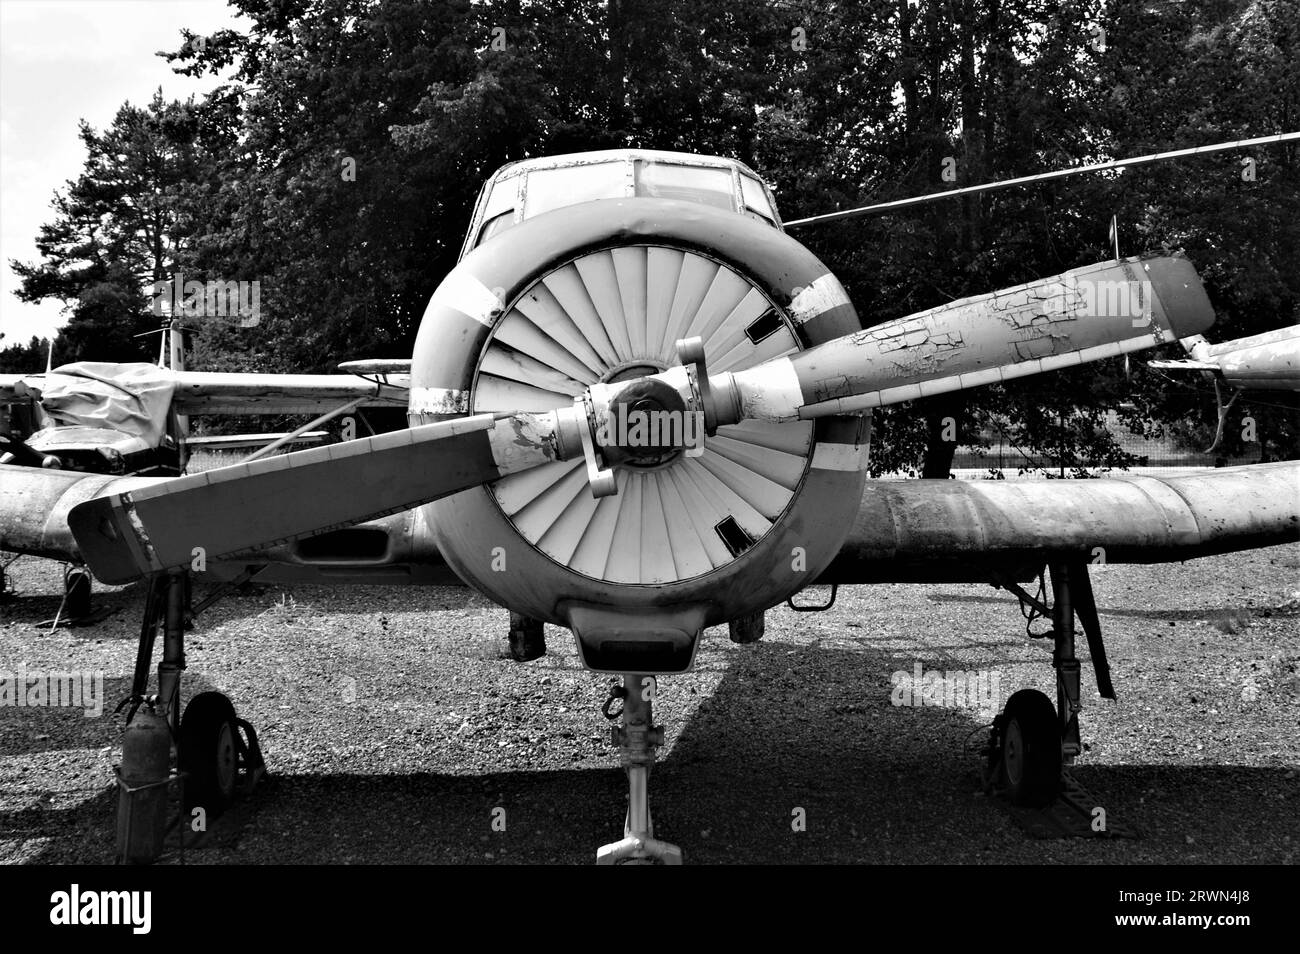 Vorderansicht eines alten Flugzeugs. Flugzeugpropeller. Schwarzweißbild. Stockfoto